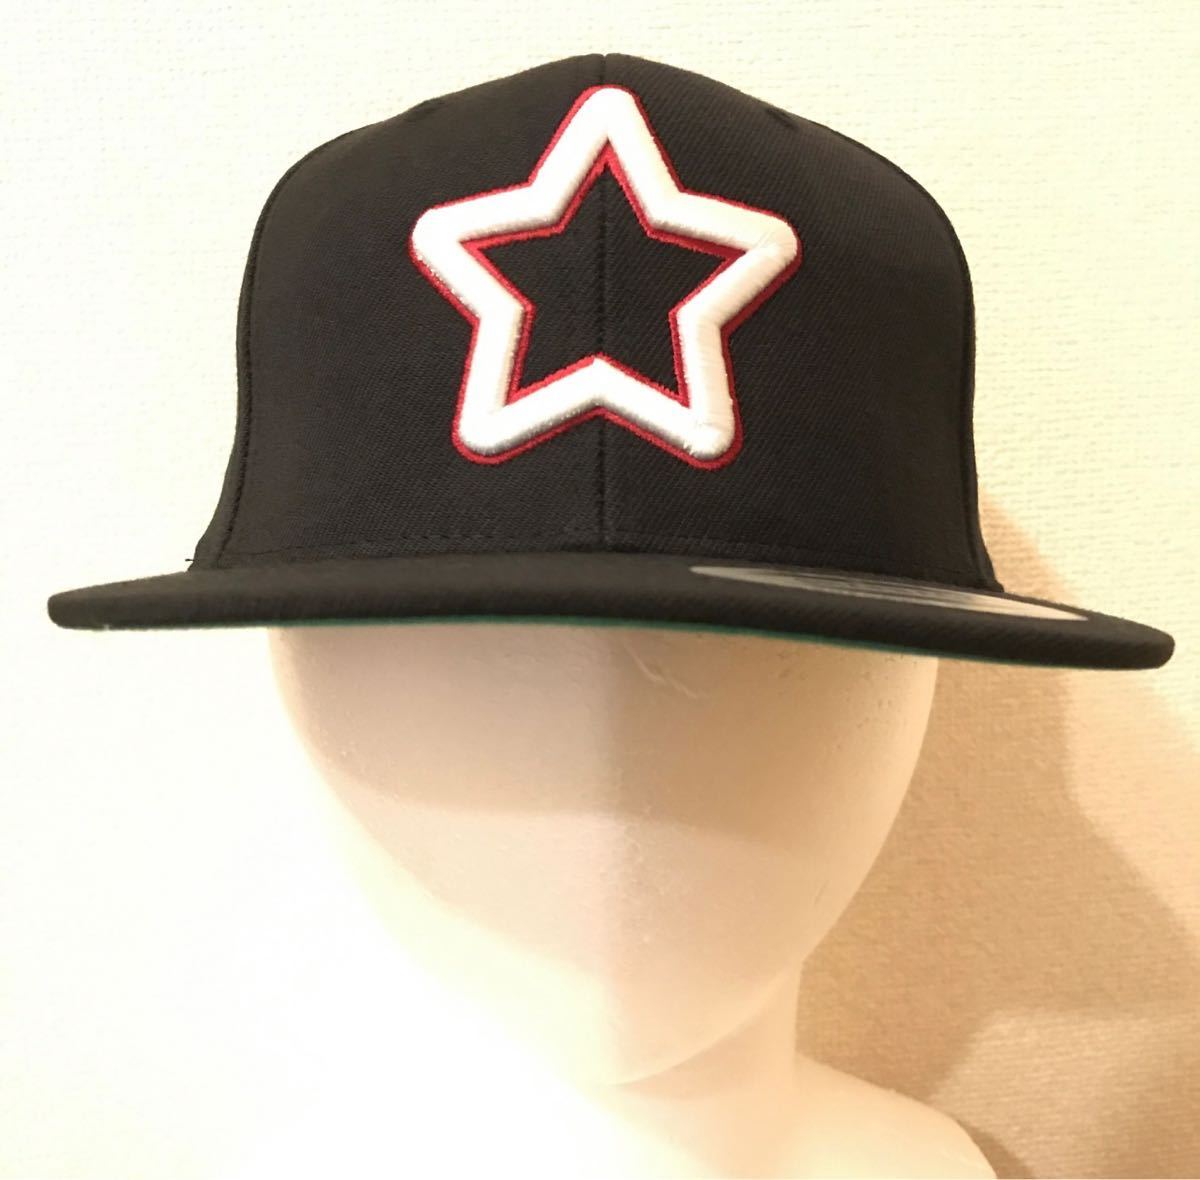 大特価新品 モブスター キャップ double star mesh cap black 中野英雄 スナップバック 白×黒 MOBSTAR